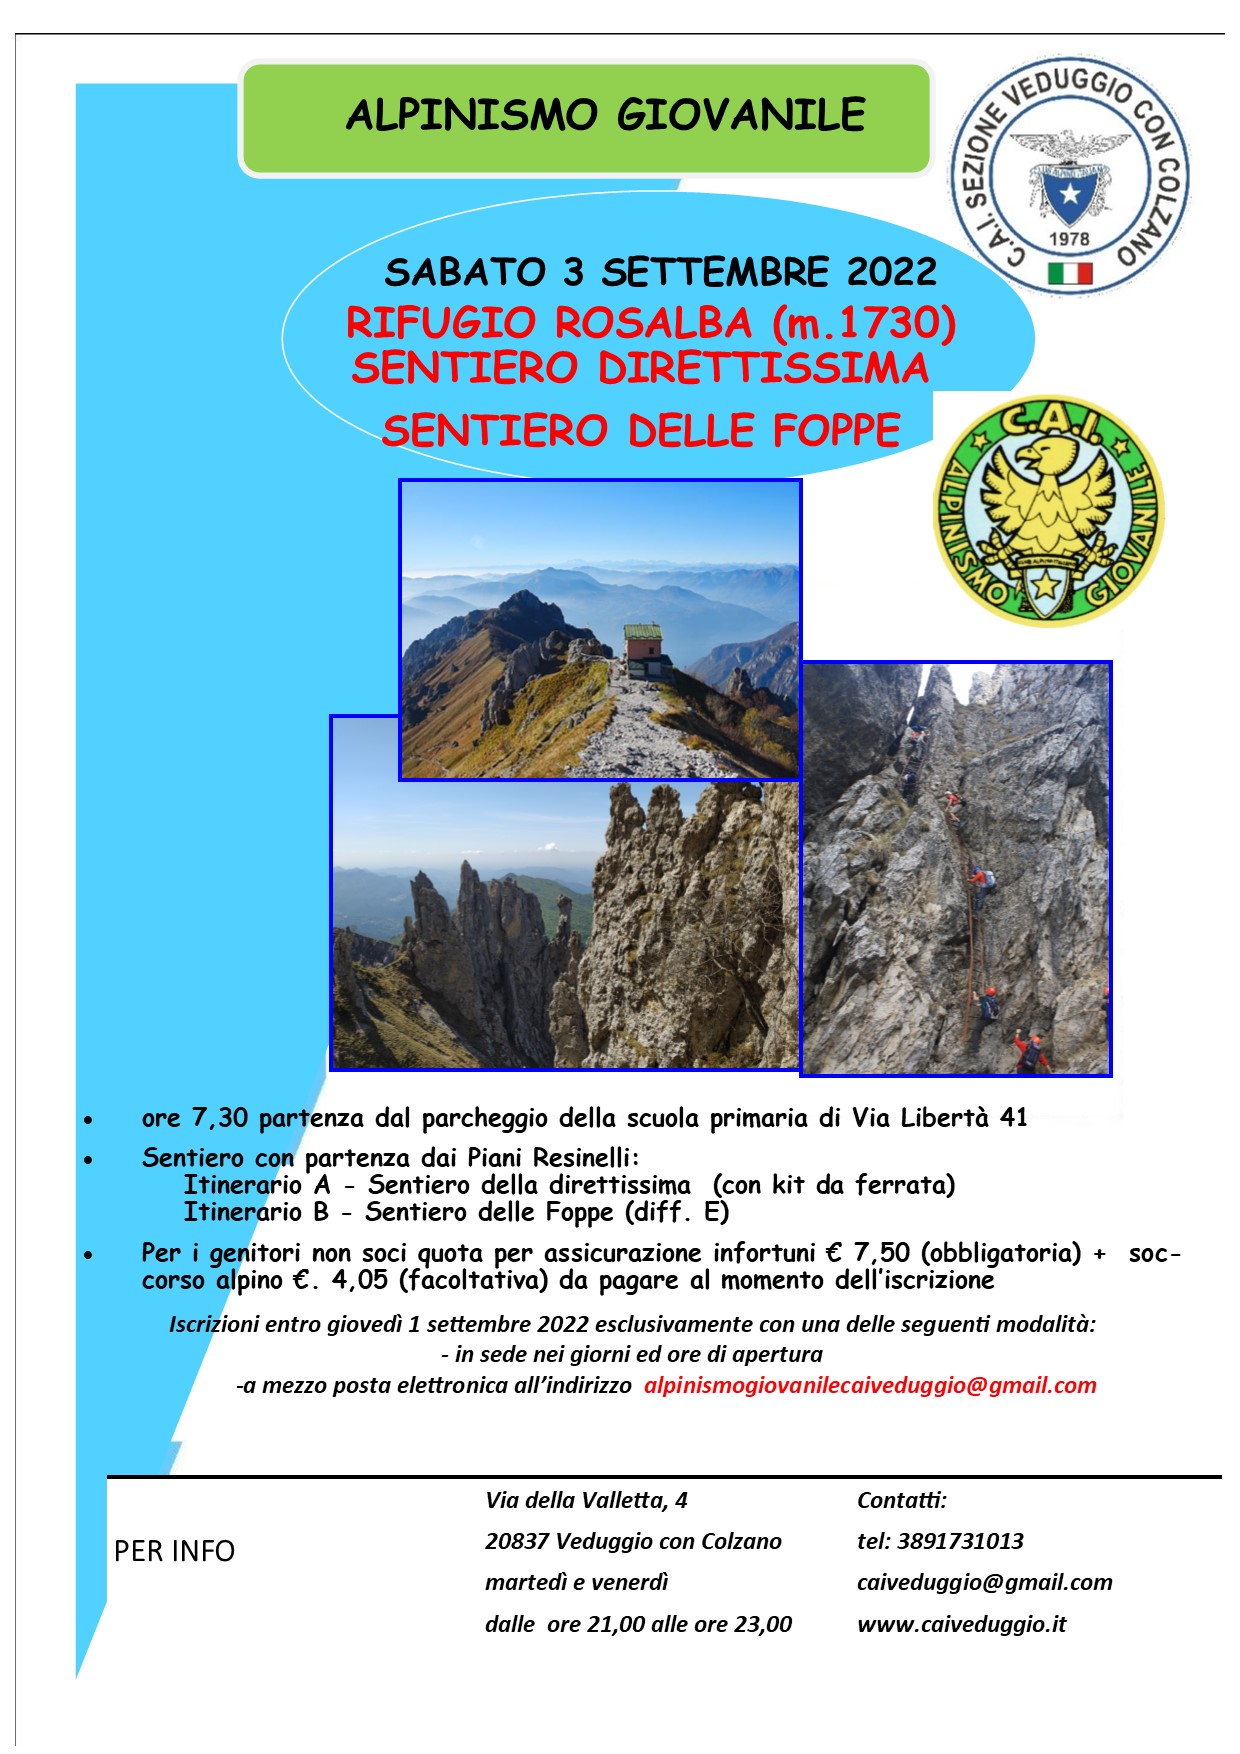 Sabato 3 settembre 2022- Rifugio Rosalba – Sentiero della Direttissima – Alpinismo Giovanile